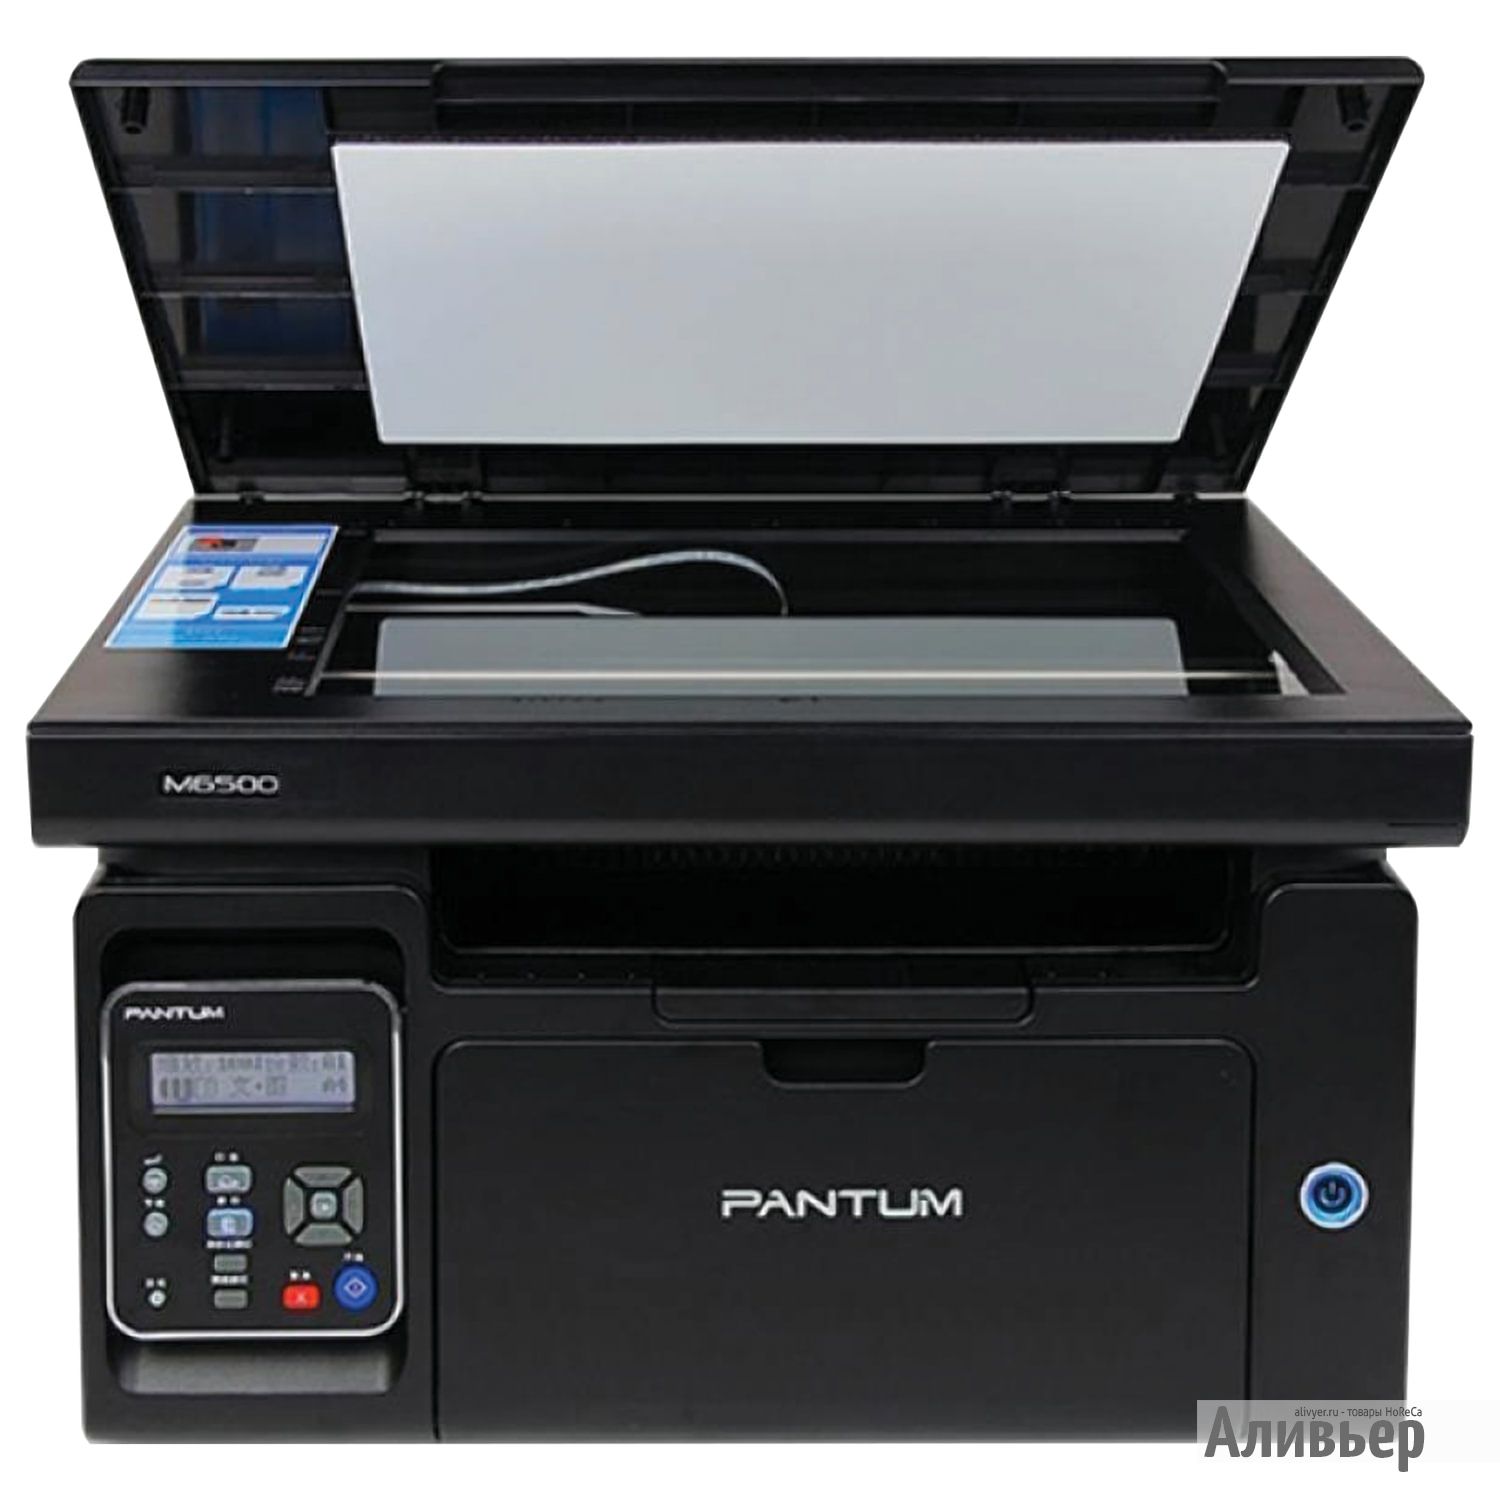 Купить принтер формата а4. Pantum m6500w. Принтер Pantum m6500. МФУ лазерное Pantum m6500w. МФУ Pantum m6500 (m6500).